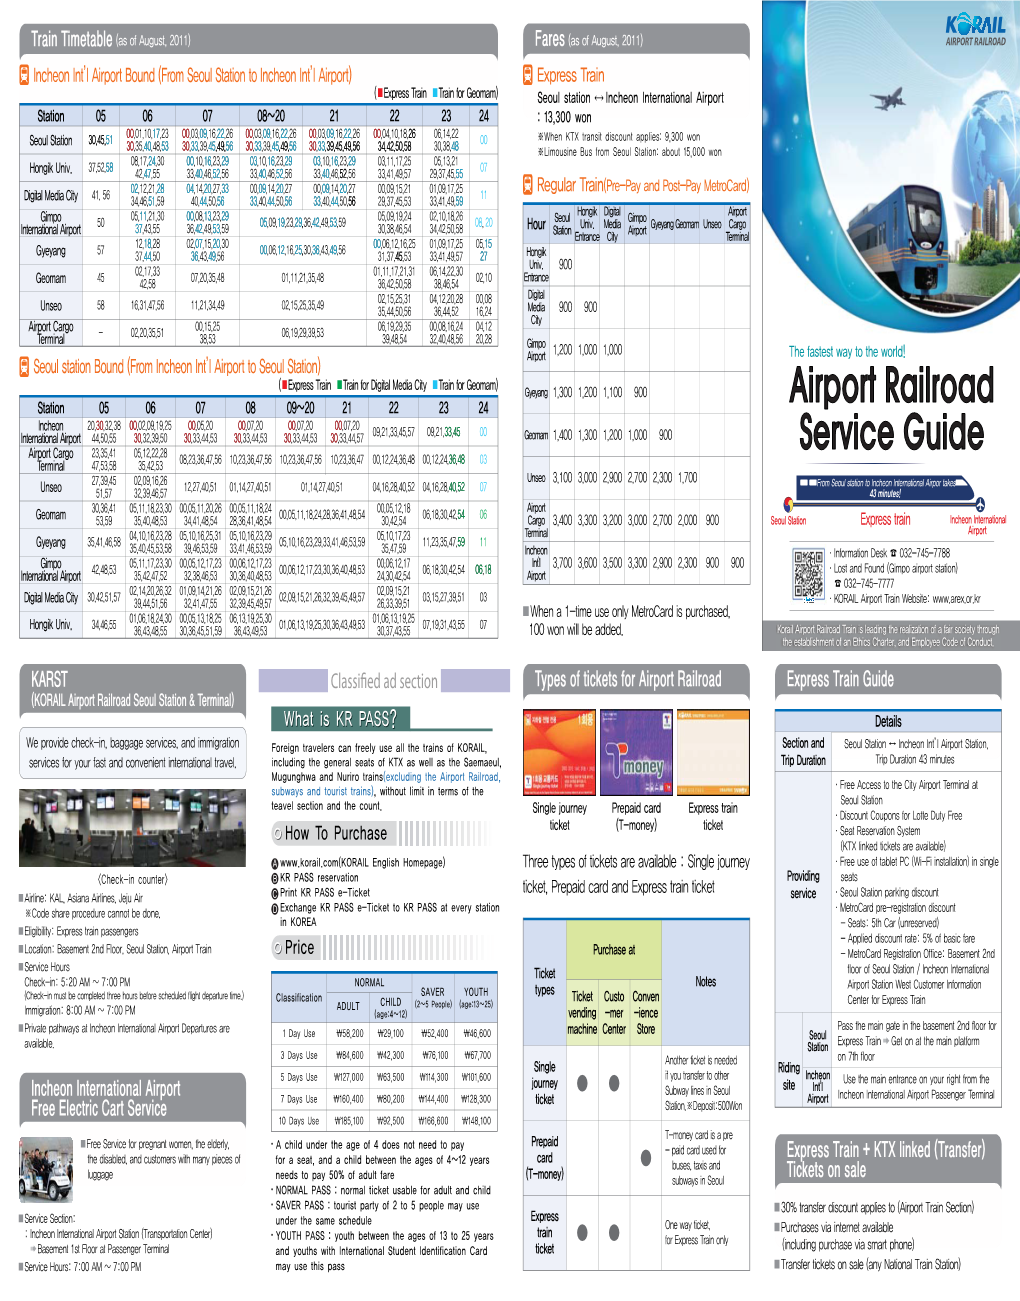 Airport Railroad Service Guide